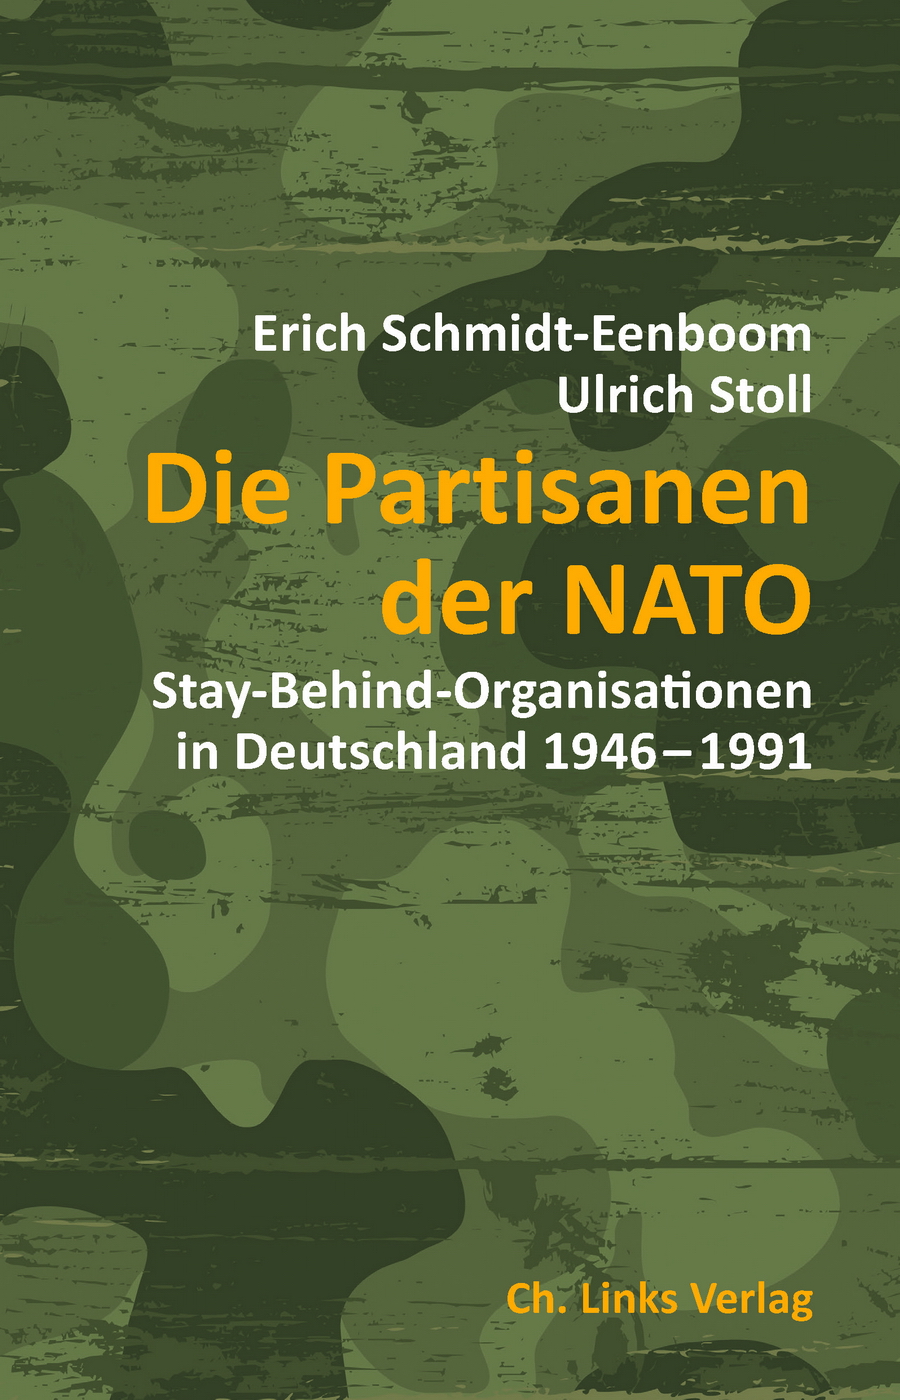 Die Partisanen der NATO. Von Erich Schmidt-Eenboom u. Ulrich Stoll